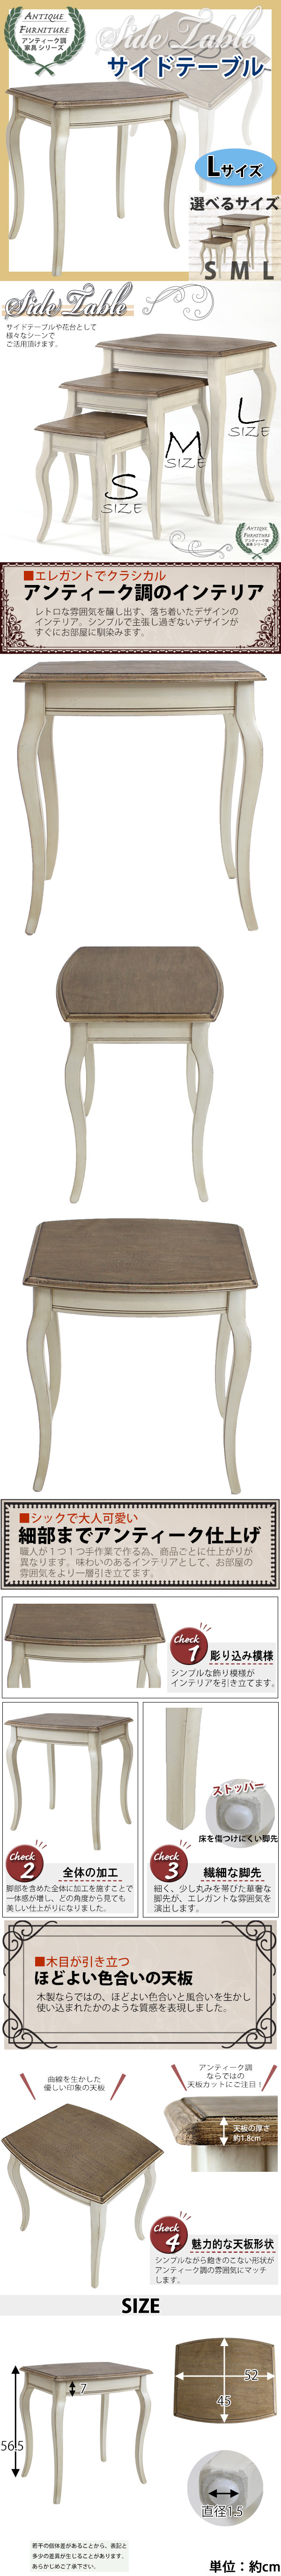 購入価格アンティーク調 サイドテーブル Lサイズ 木製 白 花台 テーブル サイドテーブル